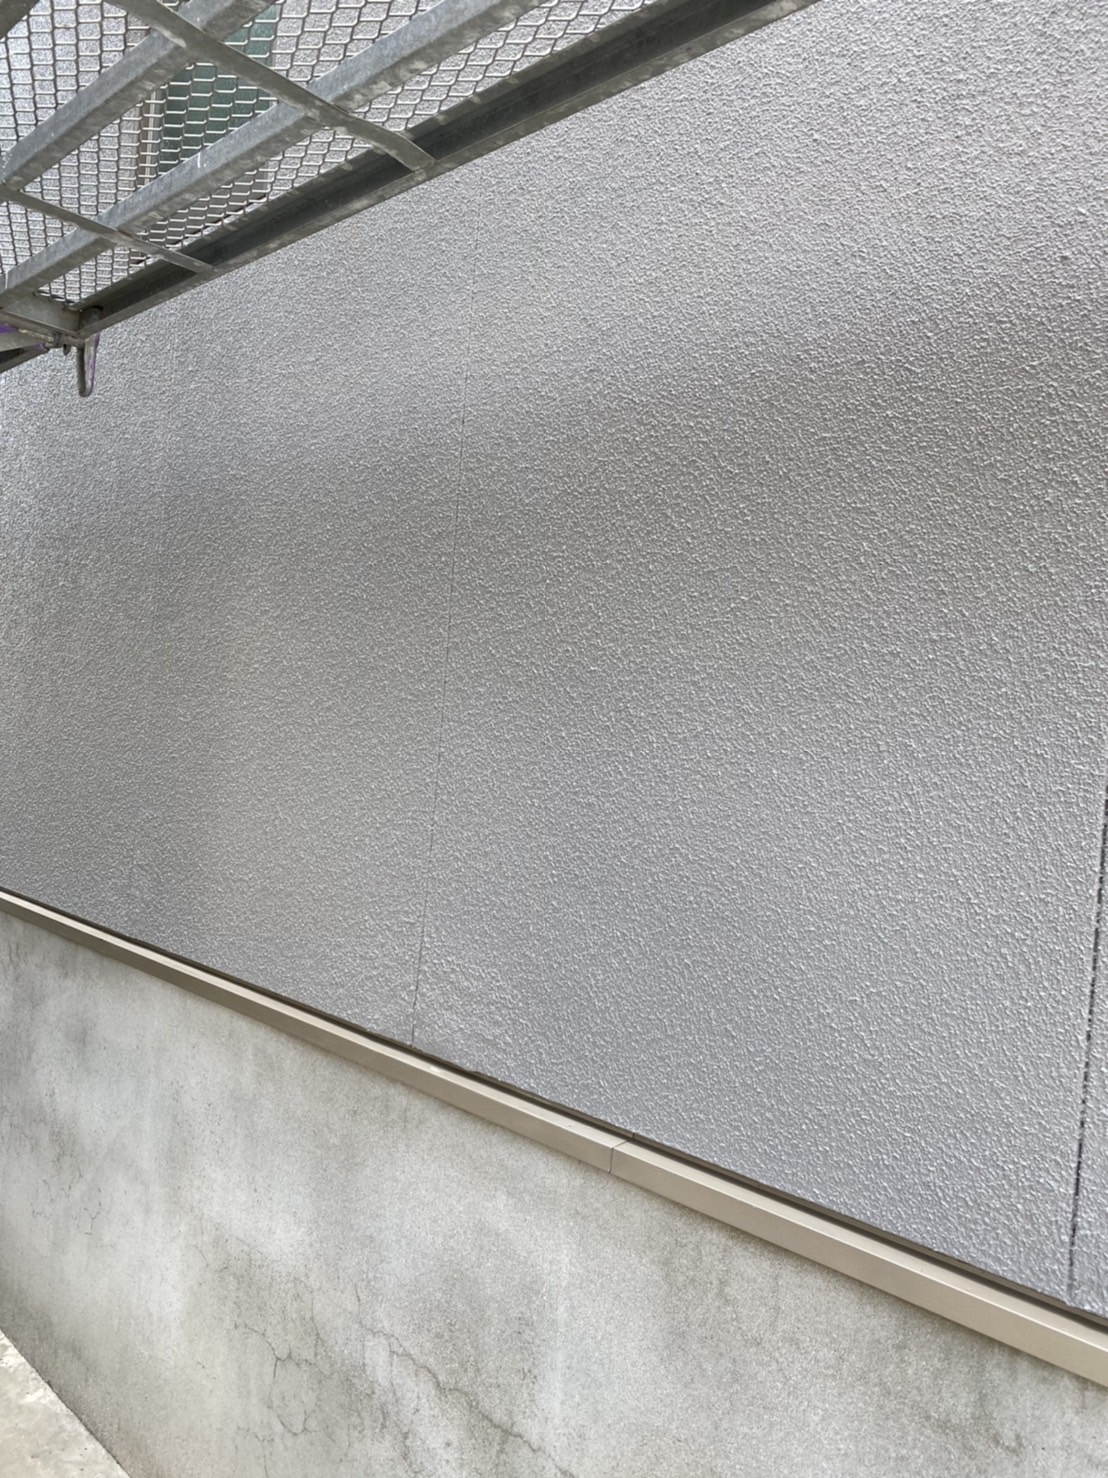 熊本市外壁塗り替えフッ素